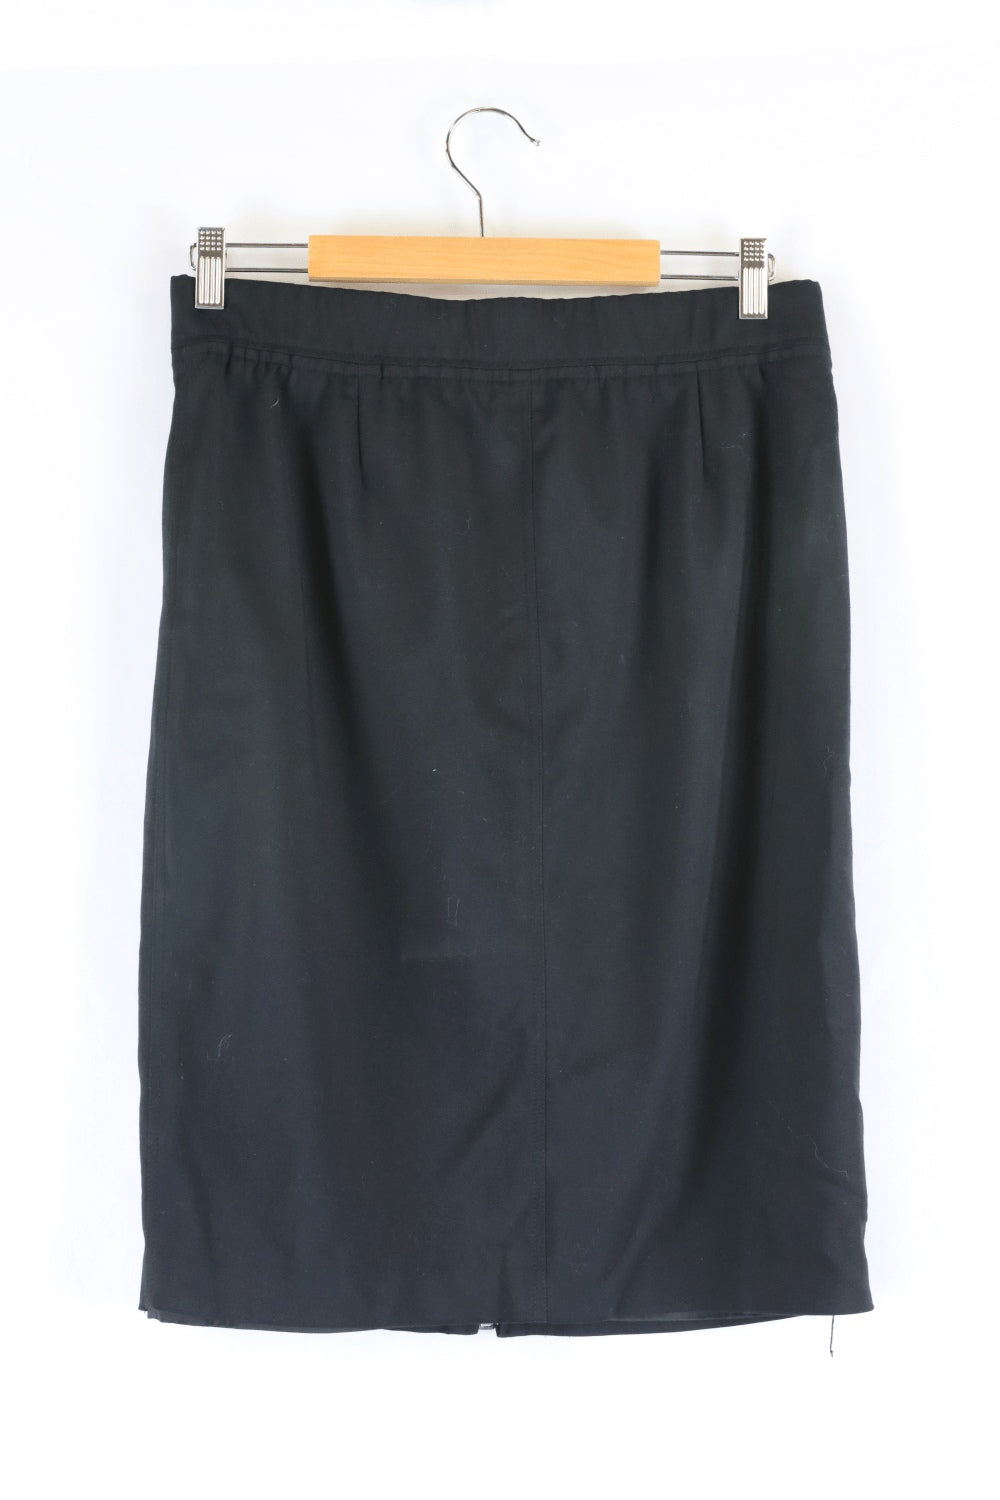 Arthur Galan Black Skirt 12